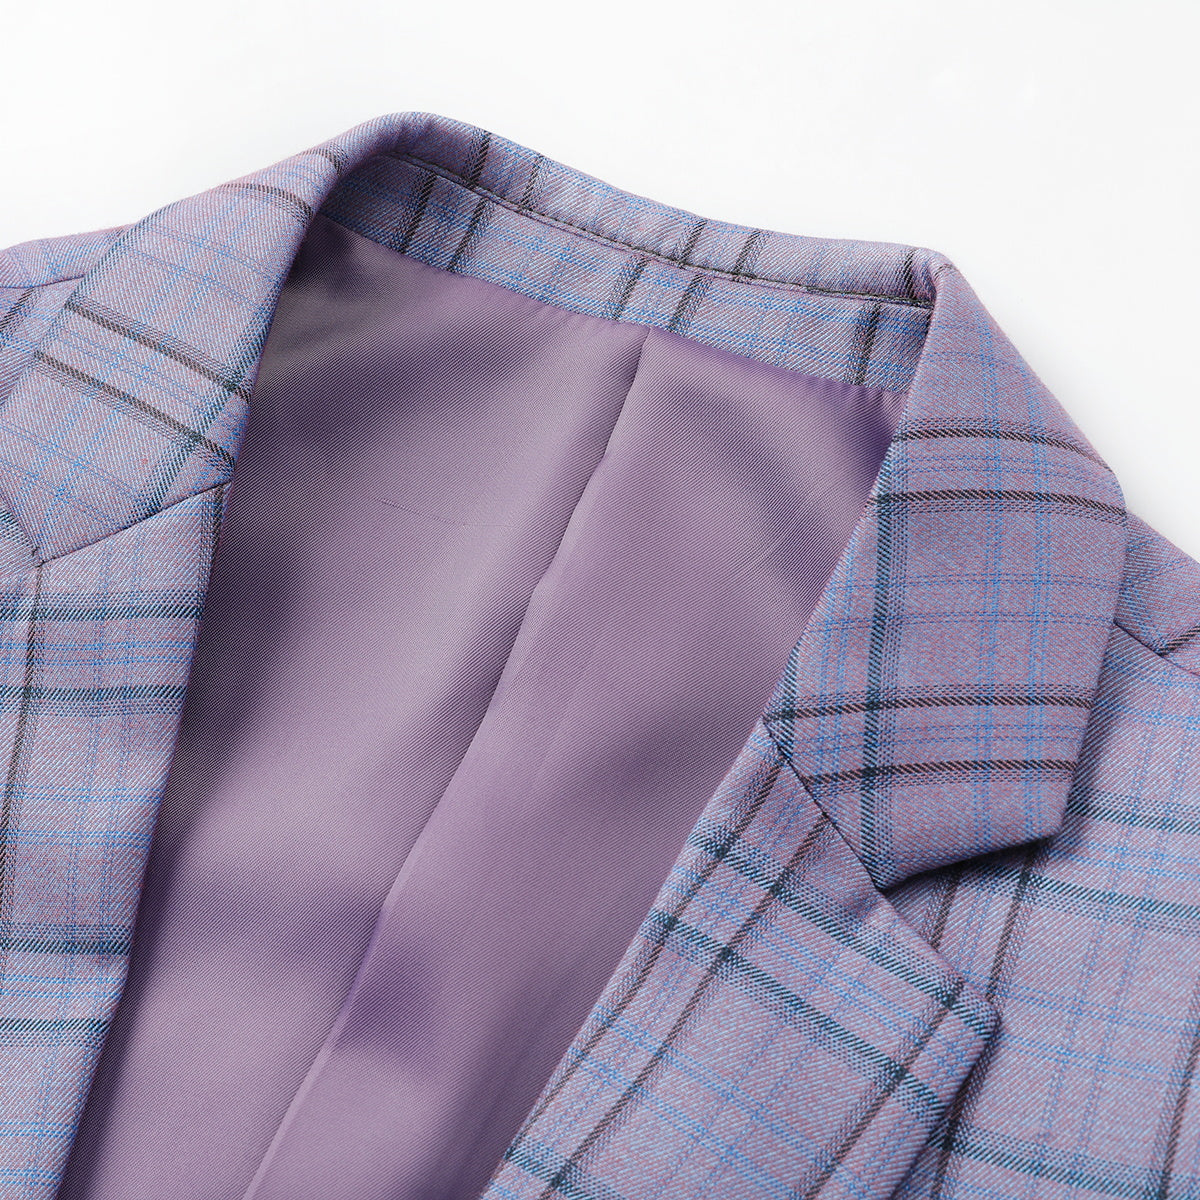 Plaid Stripe Suit Slim Fit 2-Piece Casual Suit Purple